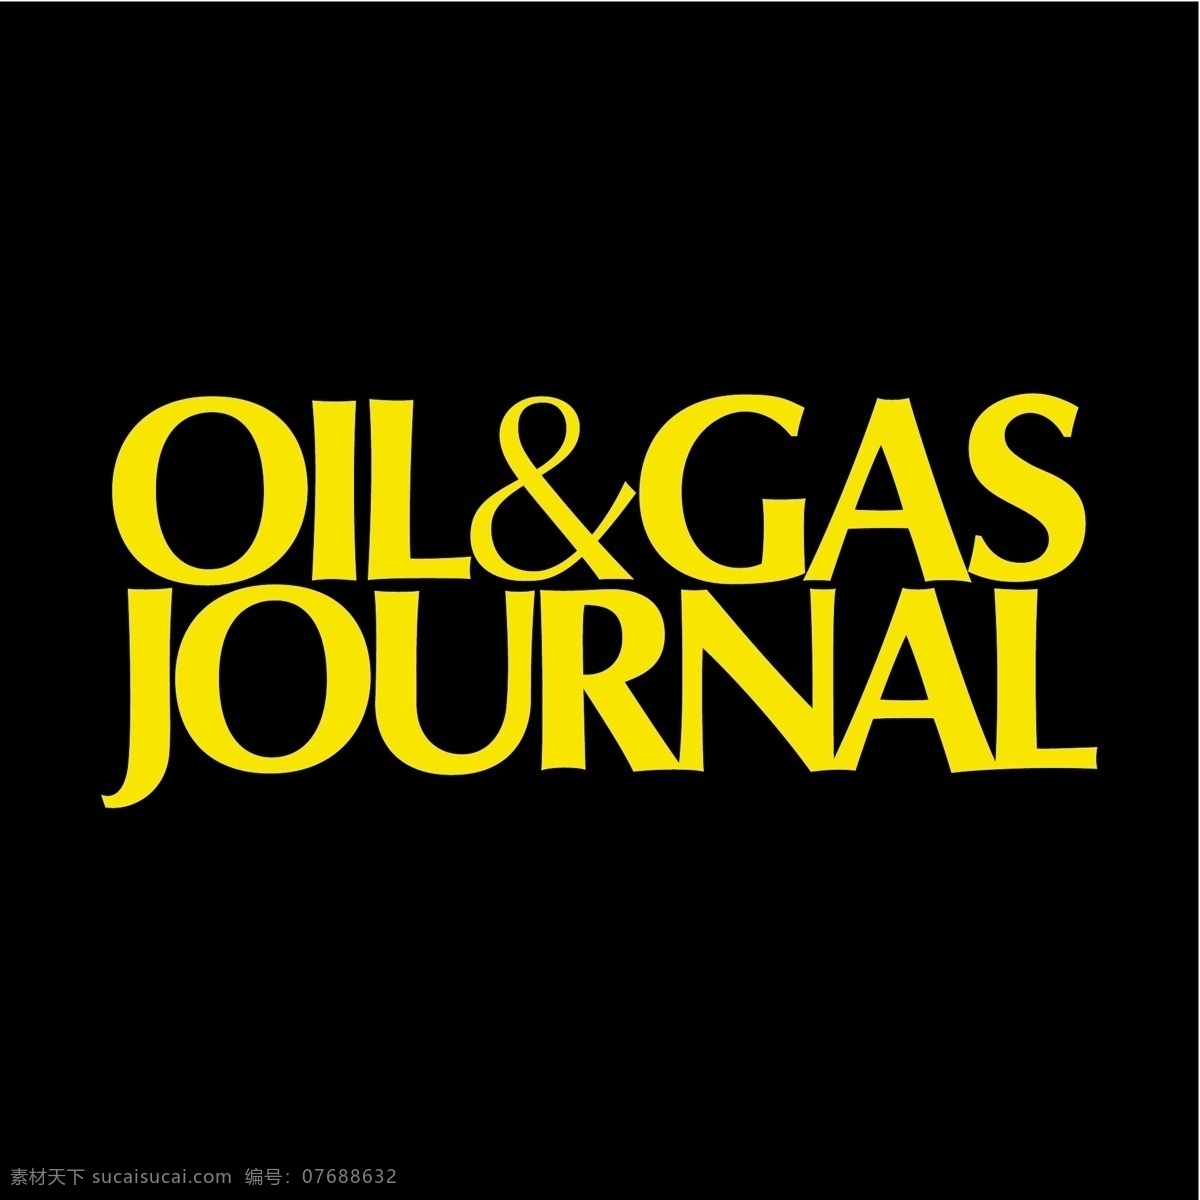 油气 油气杂志 期刊 期刊杂志 向量 油 无载体 设计杂志 免费 矢量图 杂志 矢量 图像 免费矢量杂志 载体 艺术杂志 图形 黑色